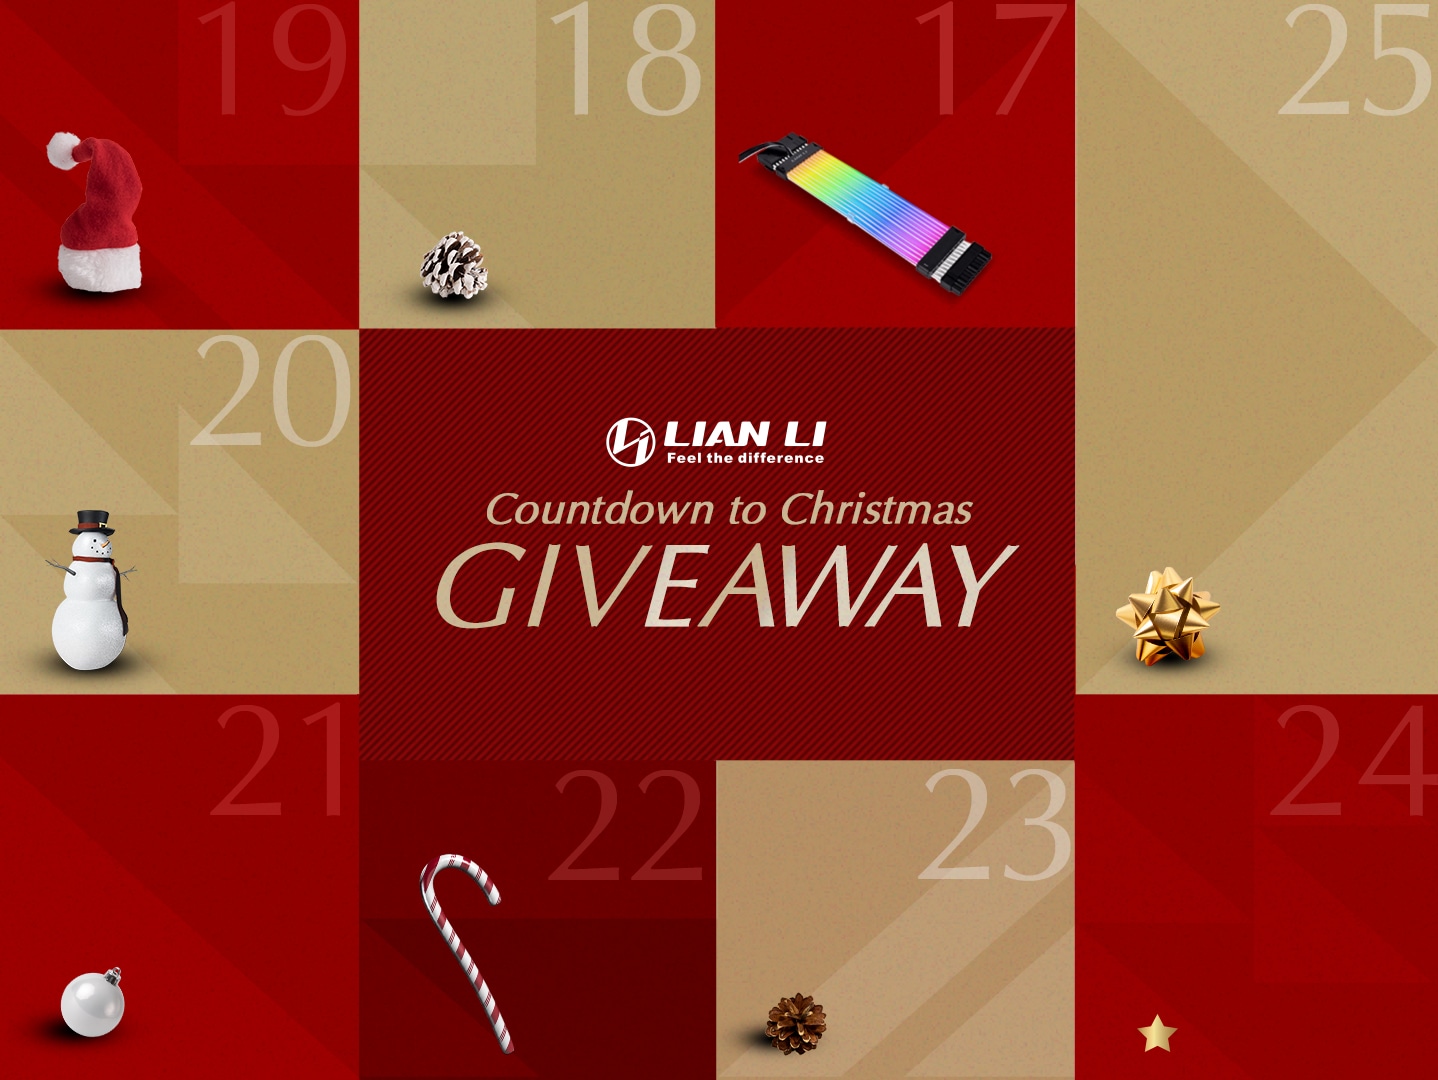 Win Lian Li Countdown to Christmas Giveaway